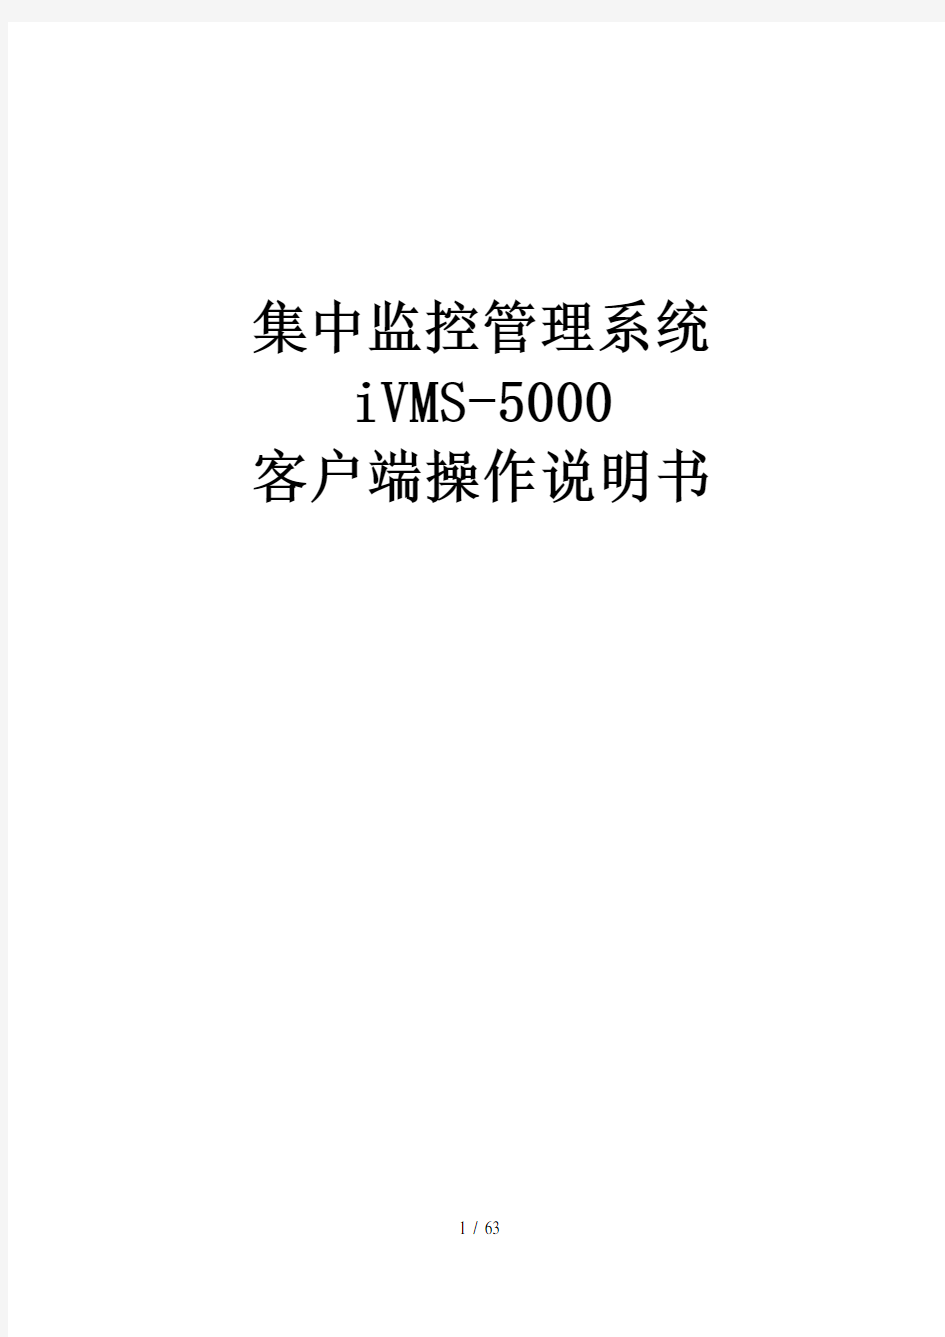 海康威视CS集中监控管理系统iVMS-5000操作说明书